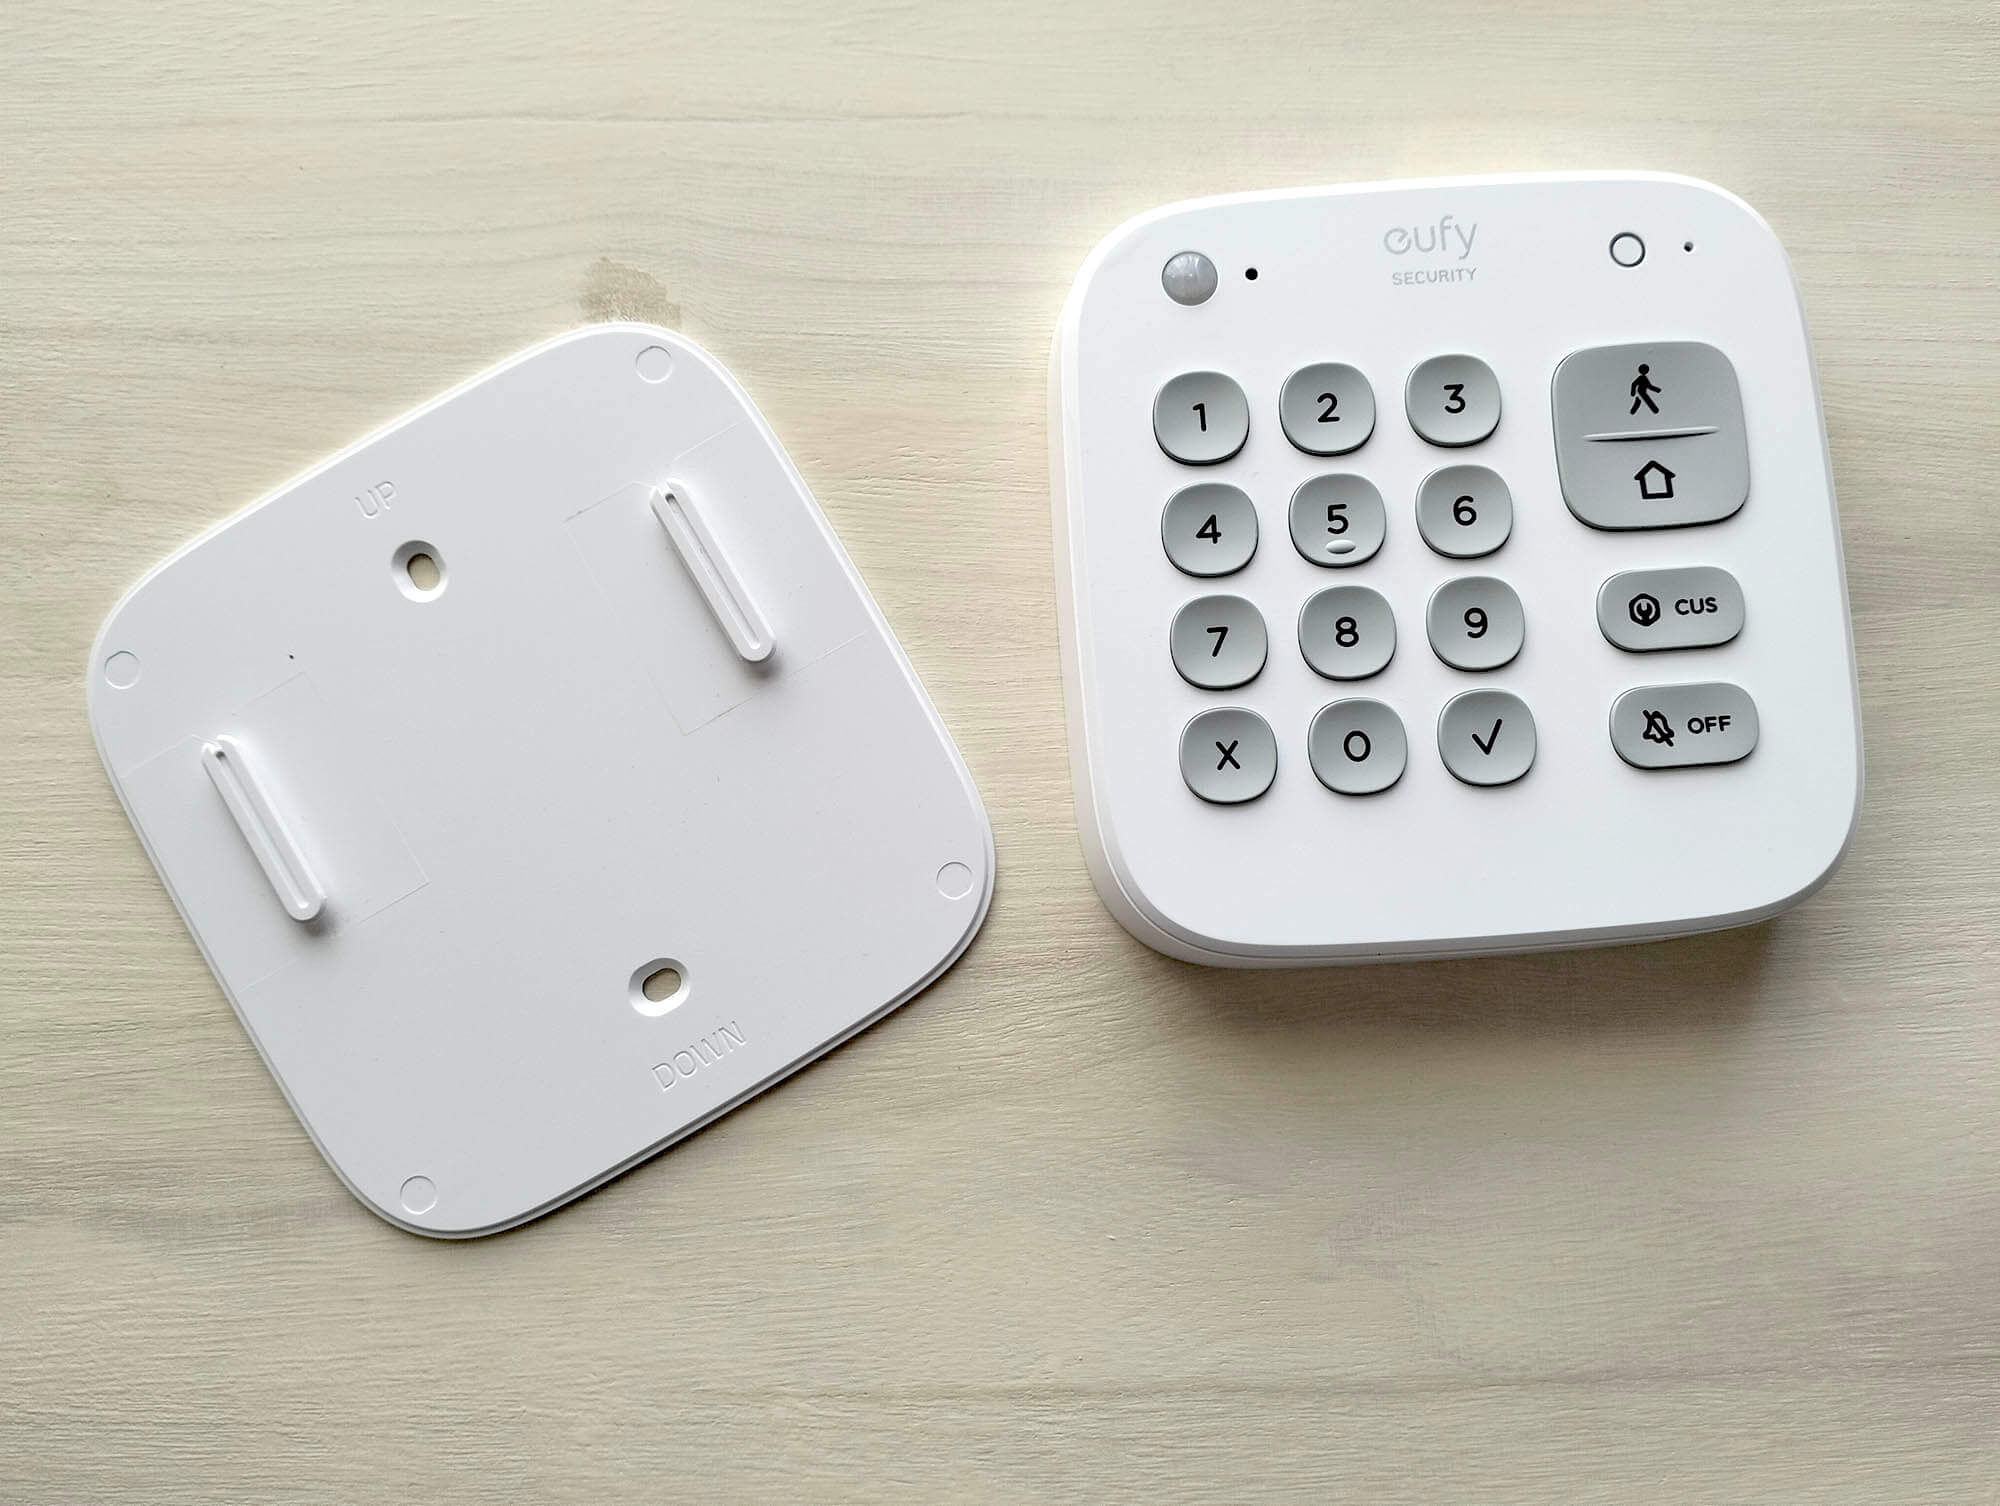 Kit de Alarma de 5 piezas de Eufy: la seguridad de tu hogar sin cuotas - Análisis 5